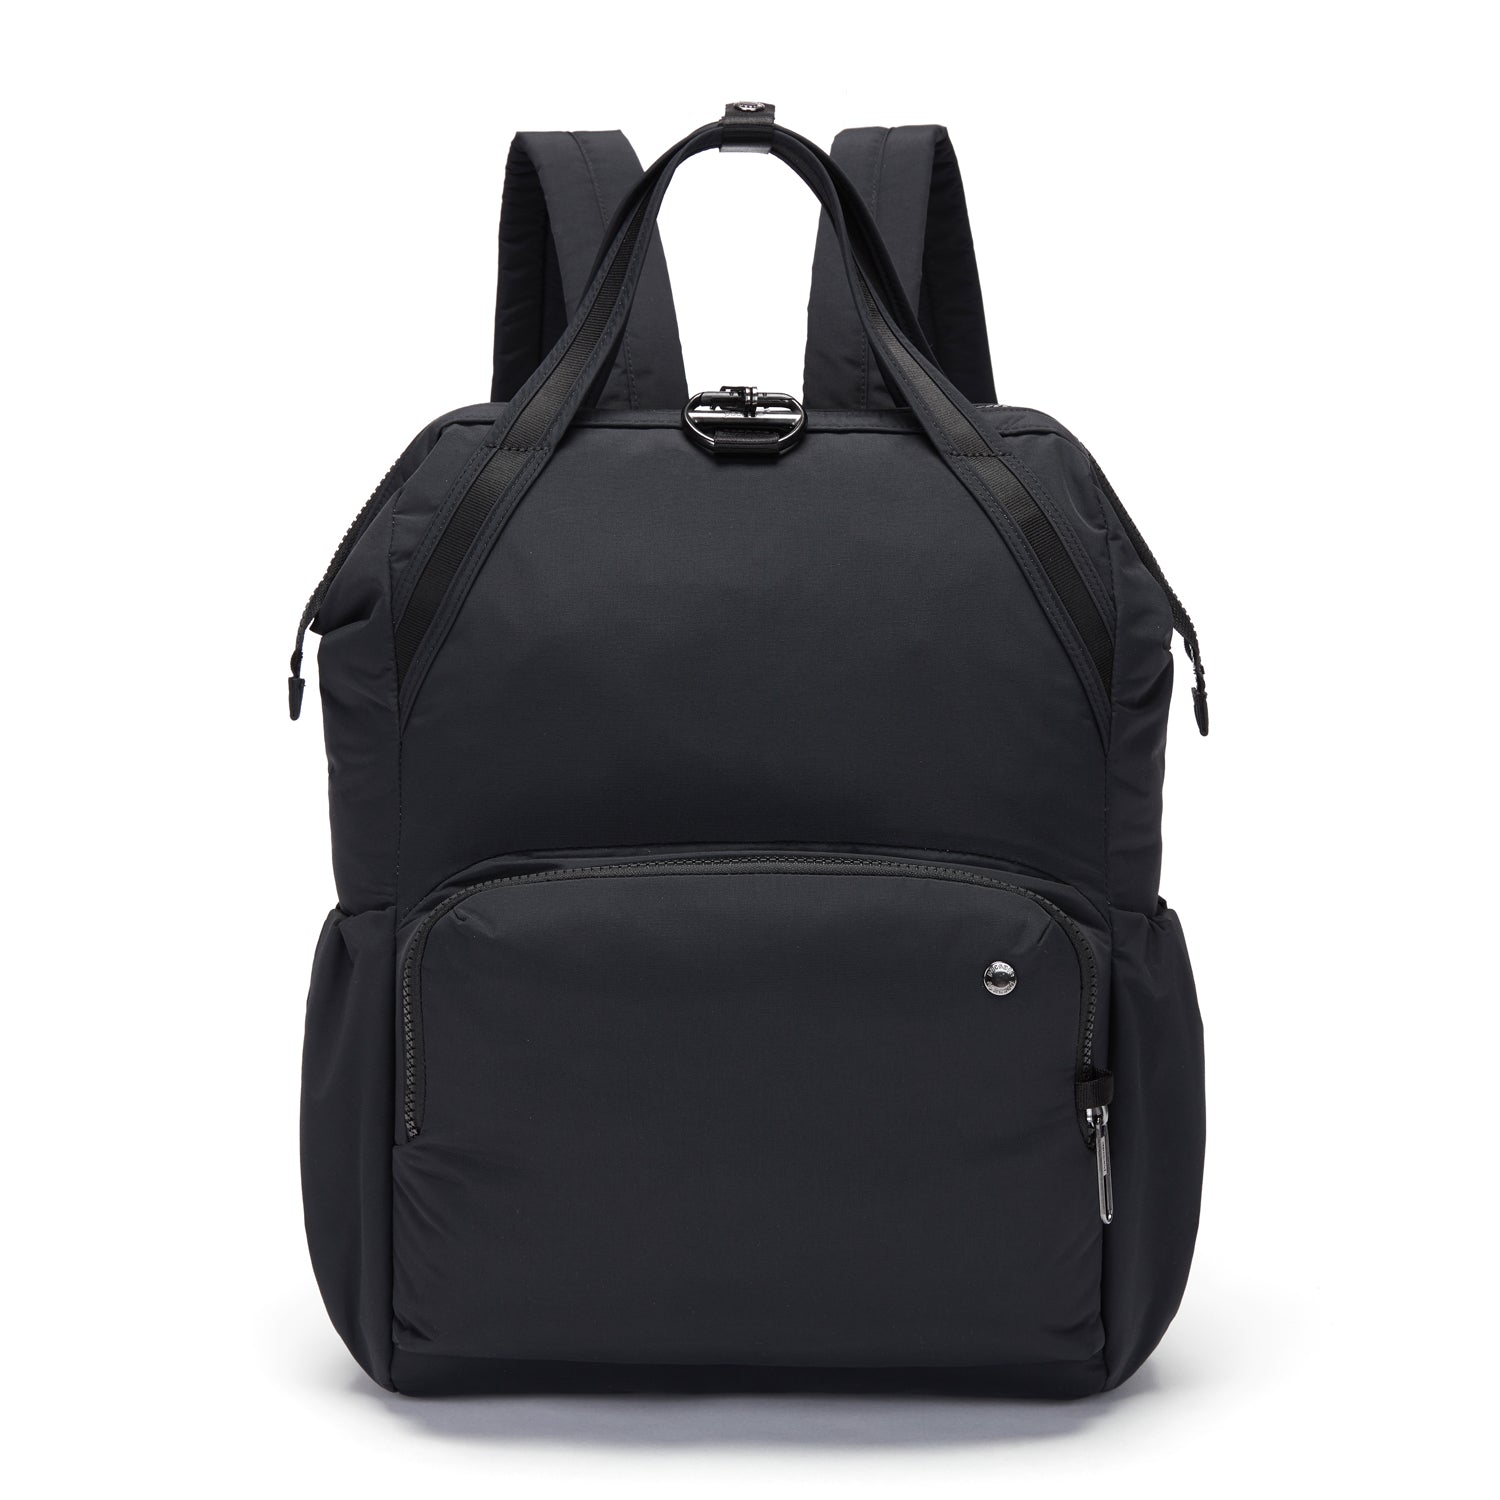 Pacsafe® CX anti-theft backpack | Pacsafe® - Pacsafe – Official